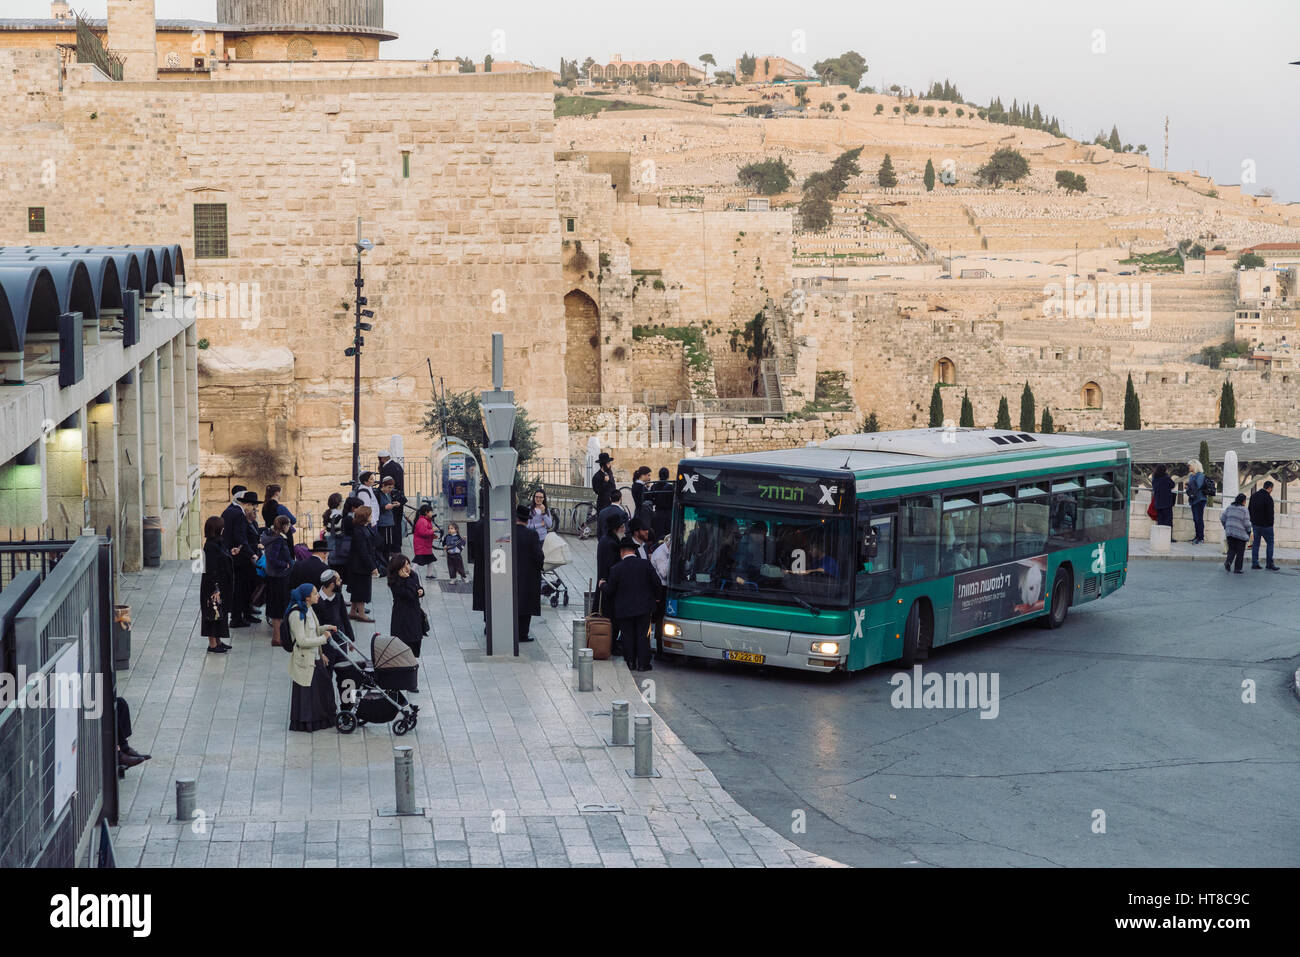 Israël , Jérusalem , bus Egged bendy coach - Société Coopérative de transport israéliennes près de mur de l'Ouest Banque D'Images